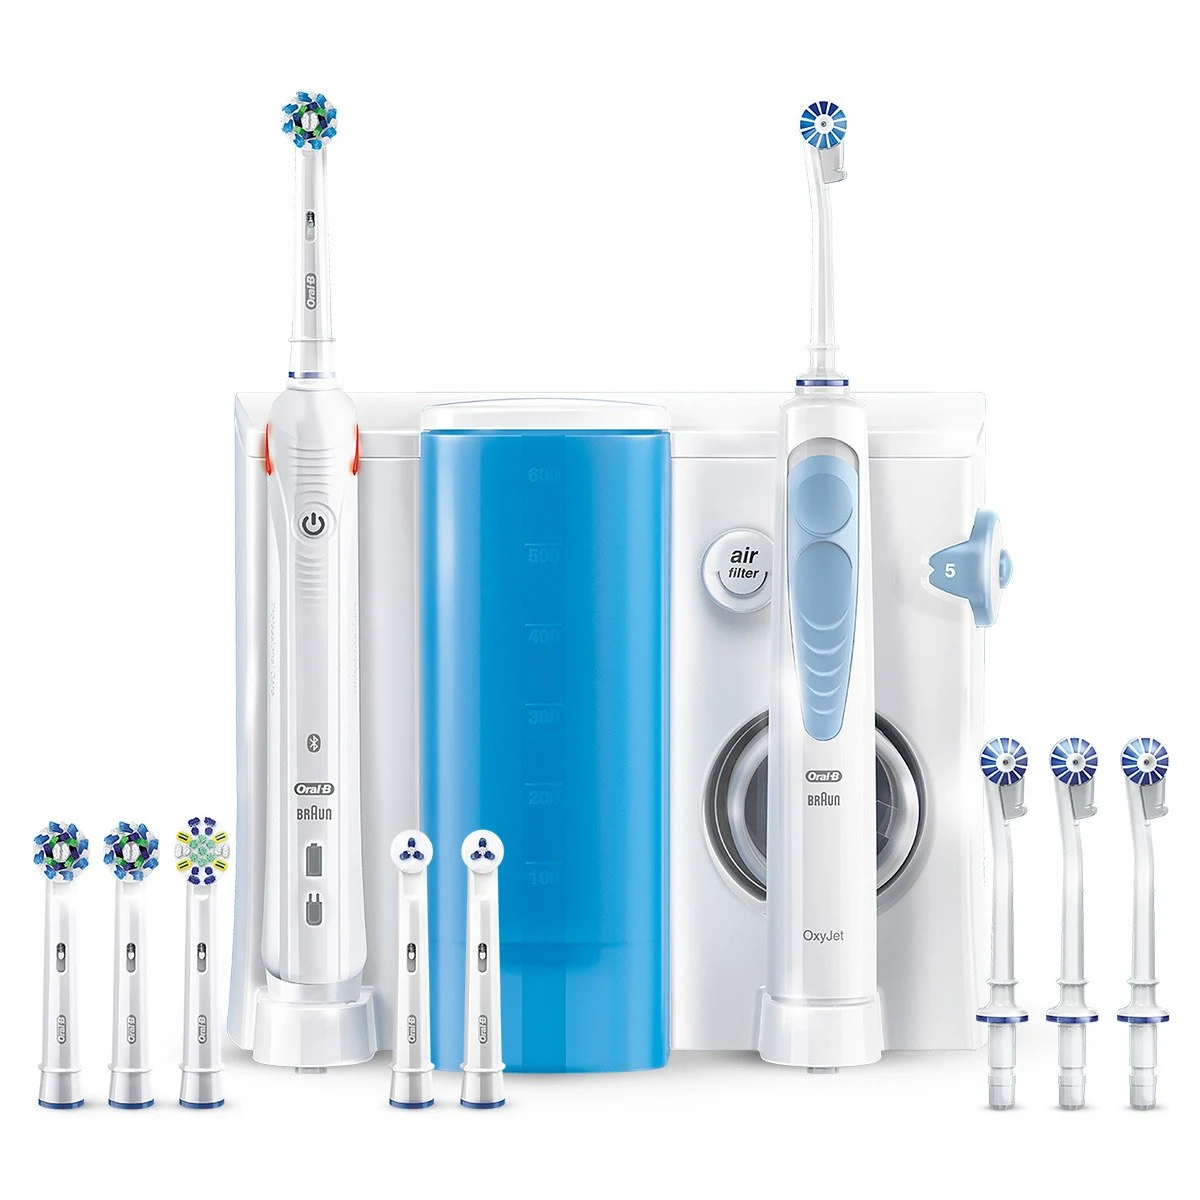 online SMART Braun Bluetooth Ersatzteile, Oral-B 5000 Center Neugeräte kaufen | Zubehör, Oxyjet